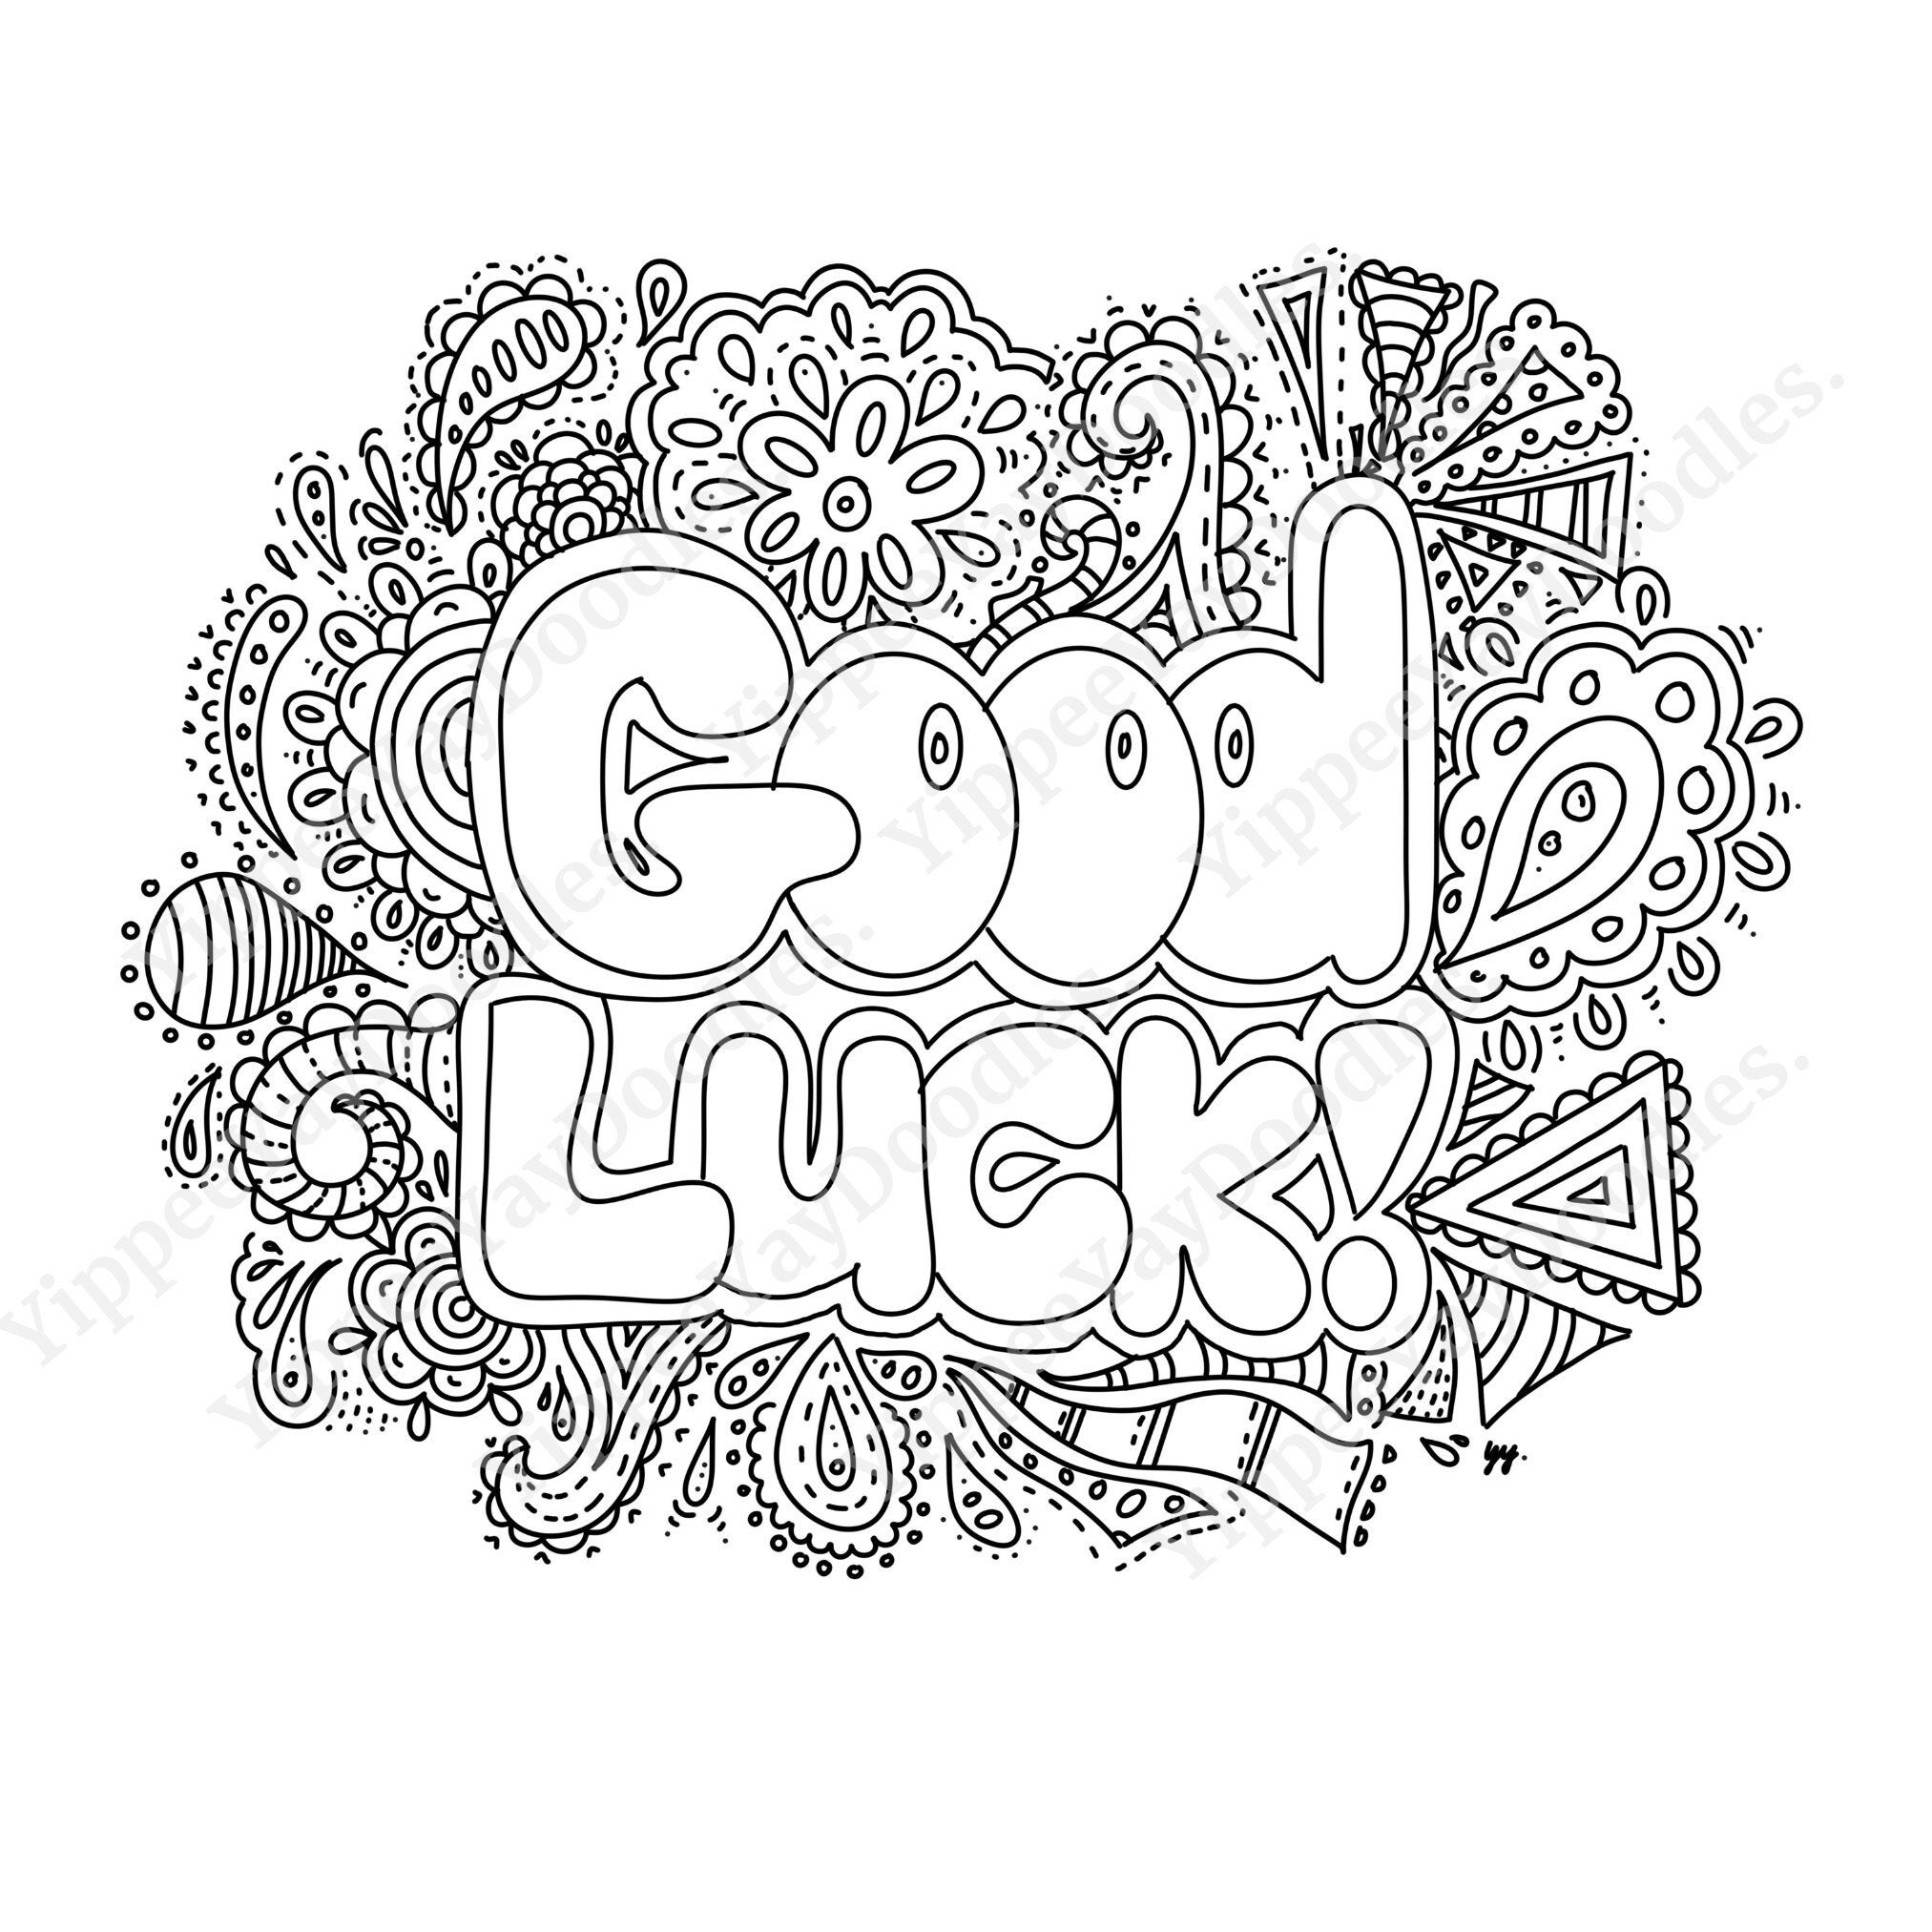 Good Luck Doodle Black & White PNG Image Instant Digital Download